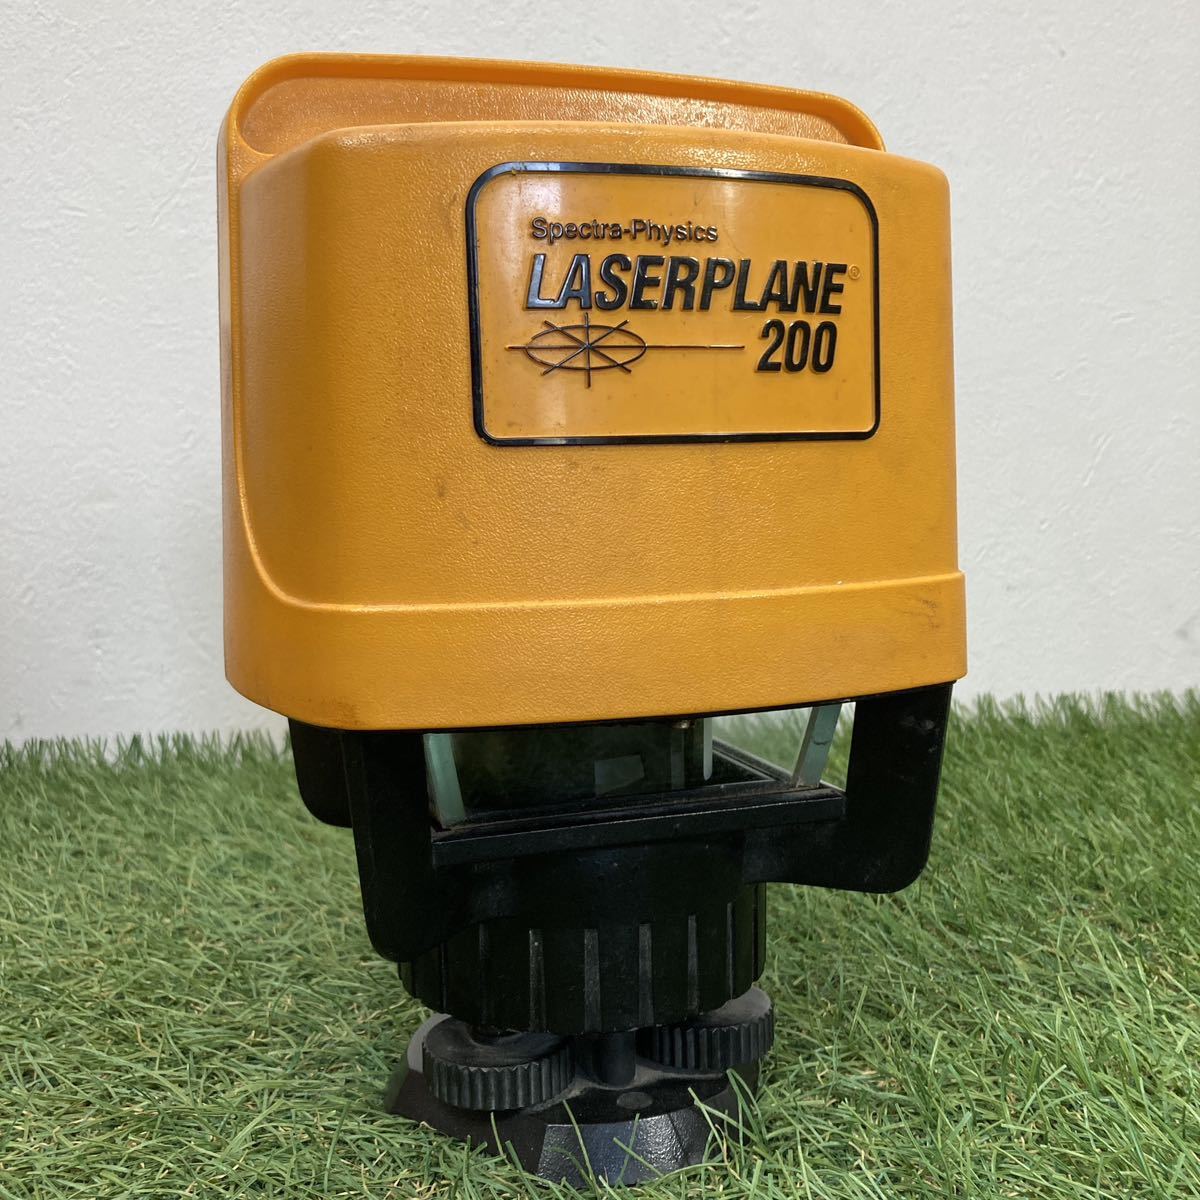  текущее состояние товар LASERPLANE200 Laser простой 200 Laser Revell вращение Laser Revell . свет контейнер имеется электризация проверка settled измерение измерительный прибор квитанция о получении 2310